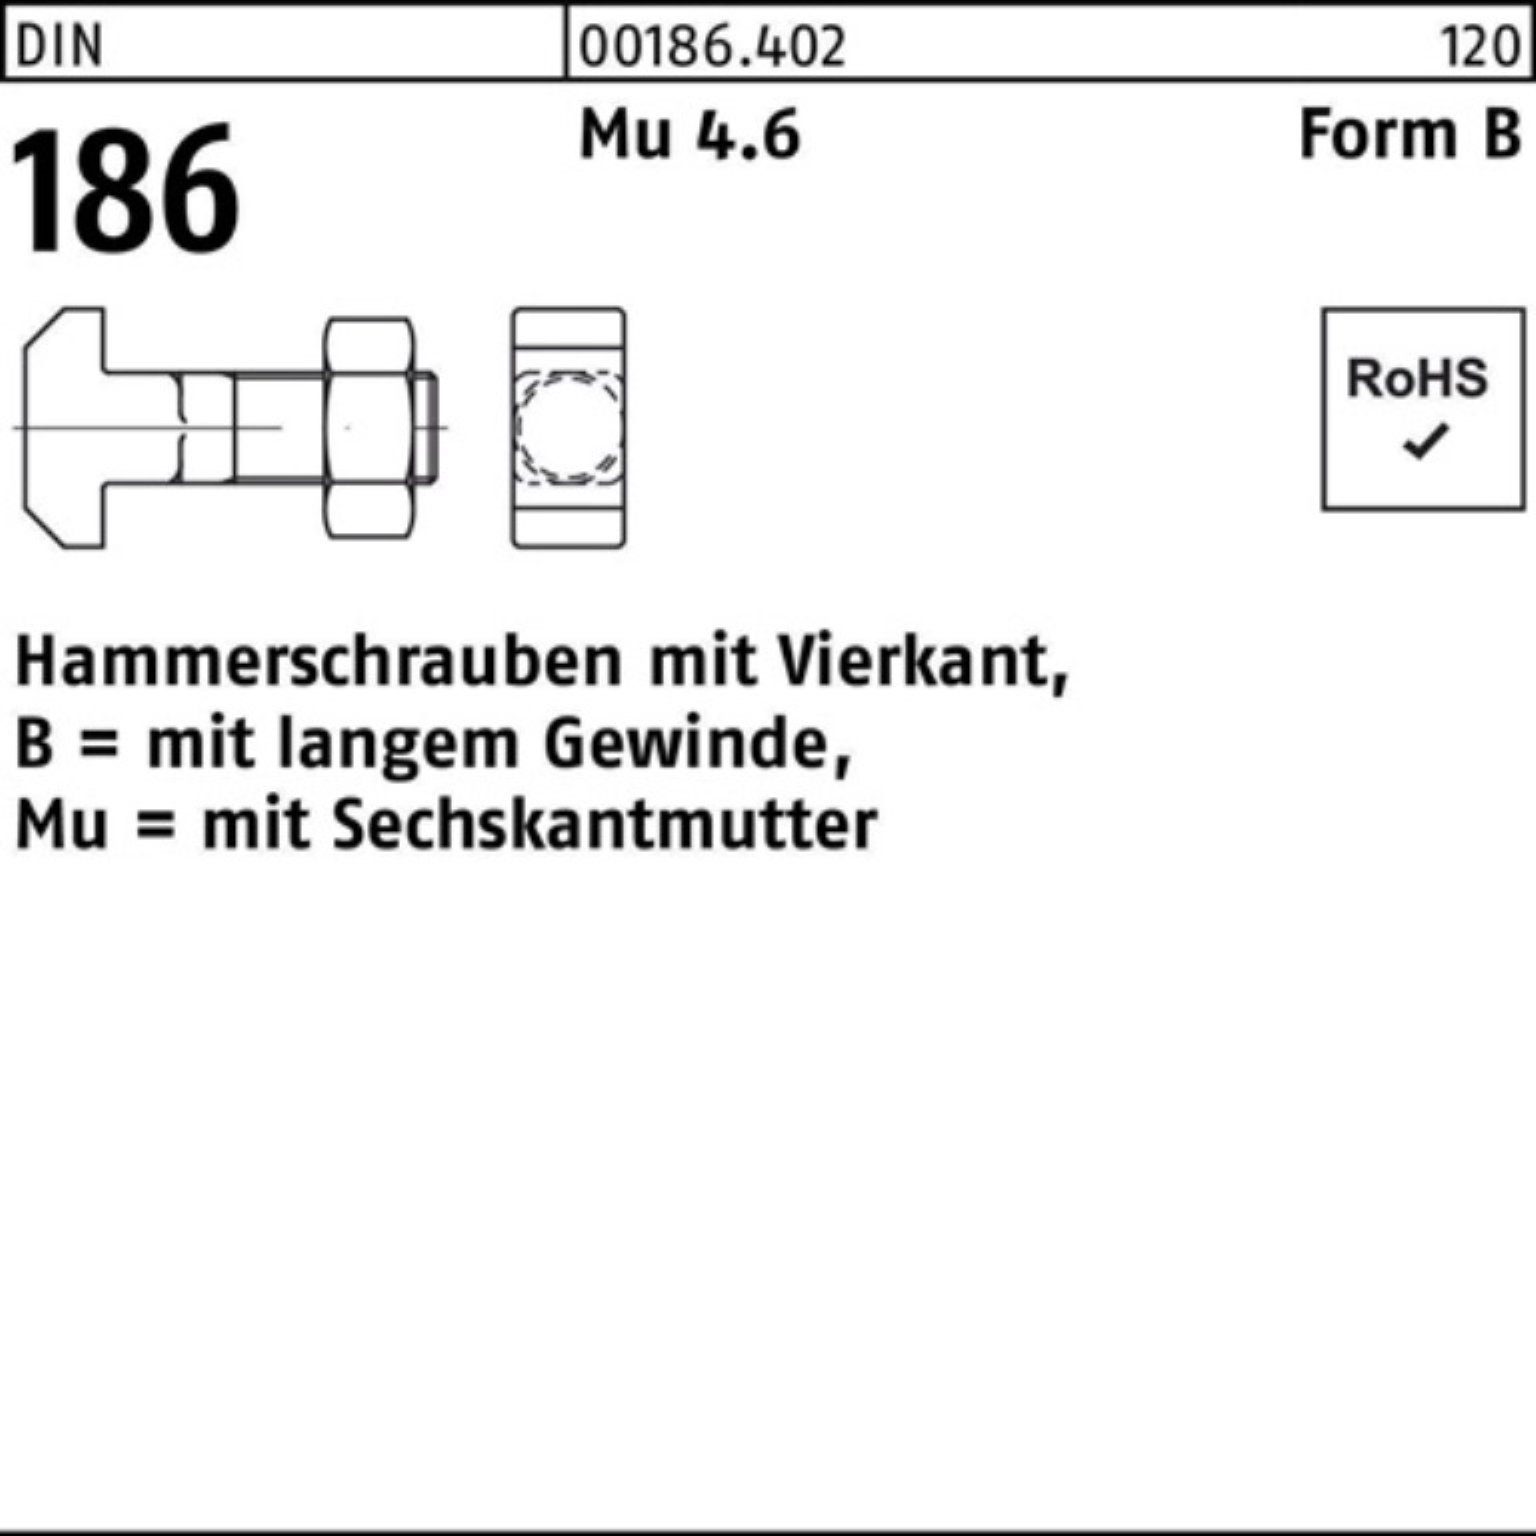 FormB Hammerschraube 120 Schraube DIN 24x Vierkant 100er BM 186 Reyher Pack 6-ktmutter